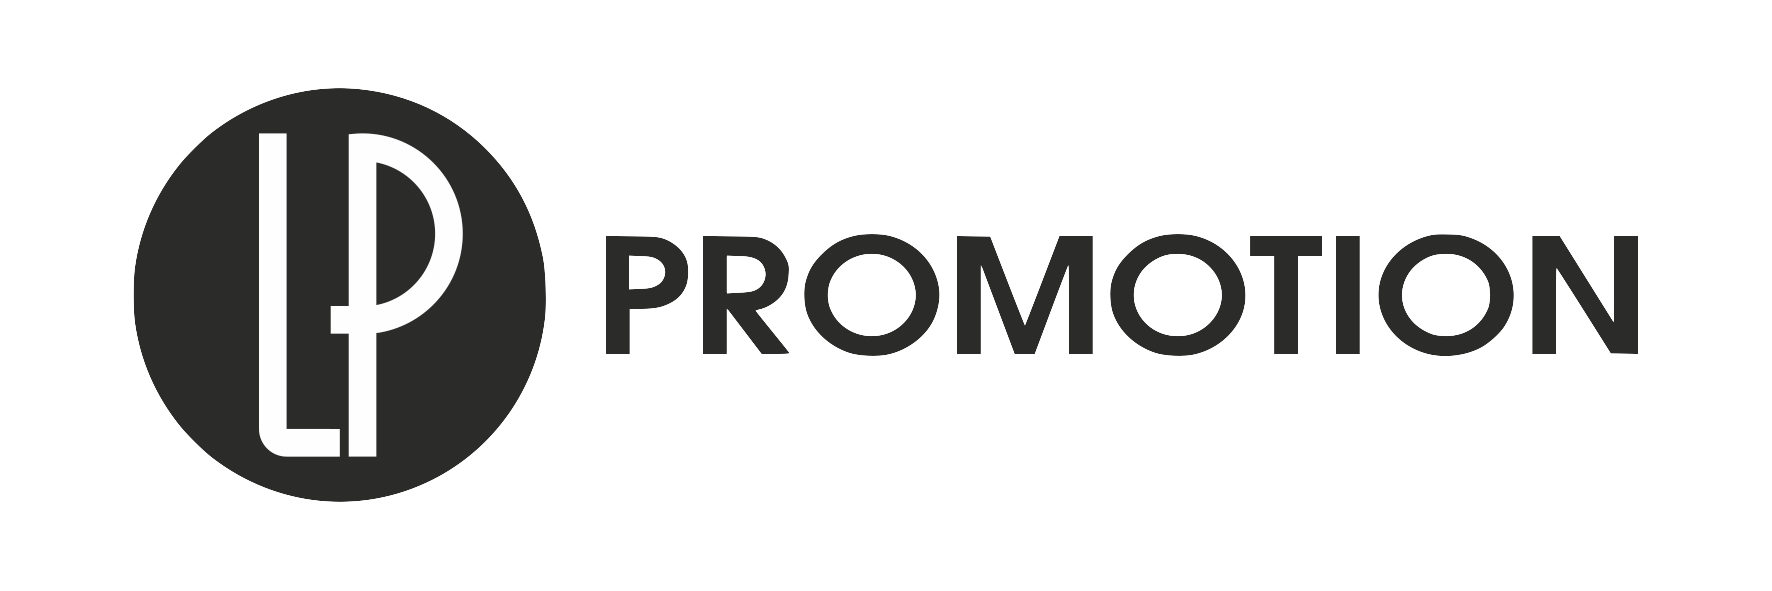 logo-lp-promotion3